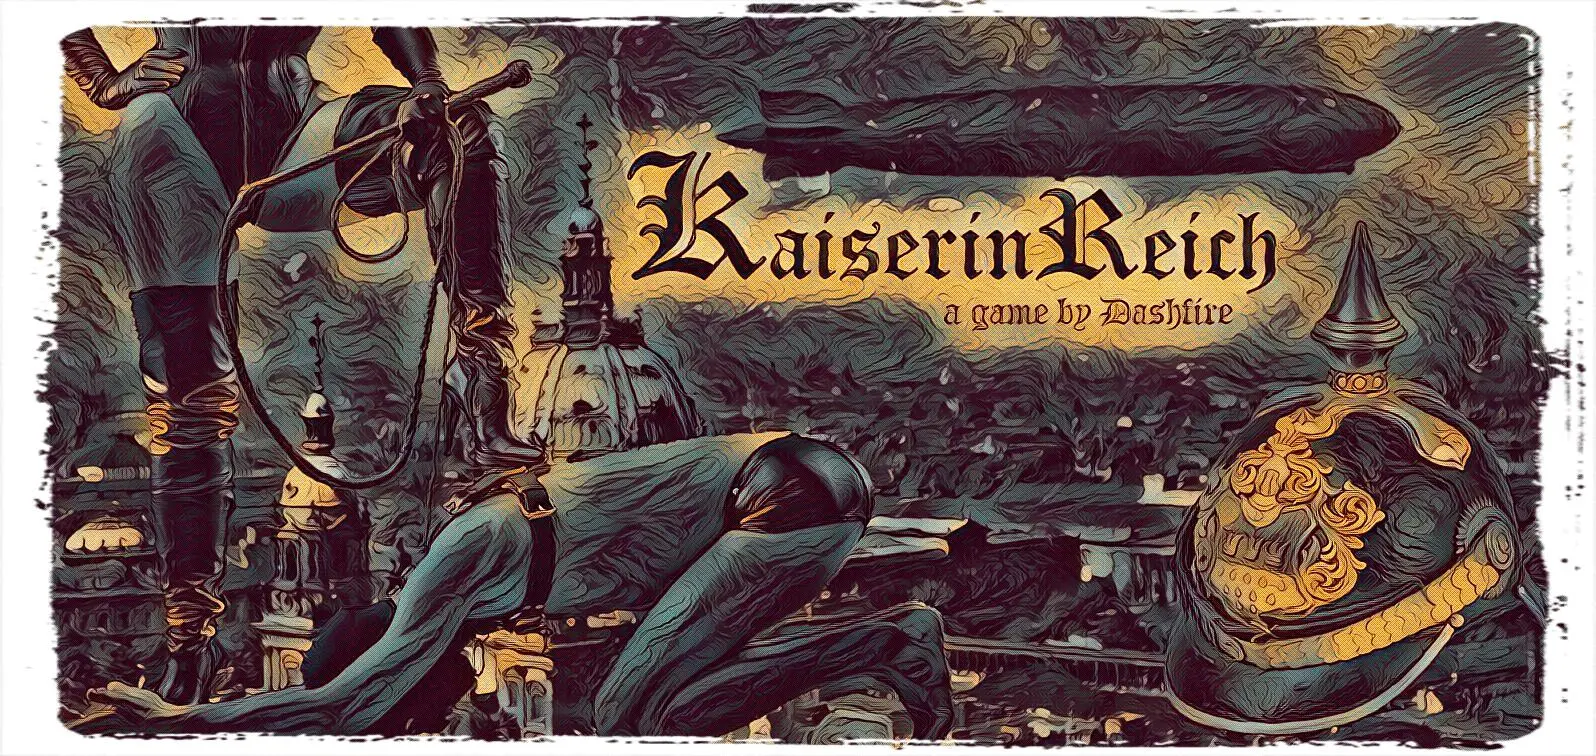 KaiserinReich [v0.538] main image